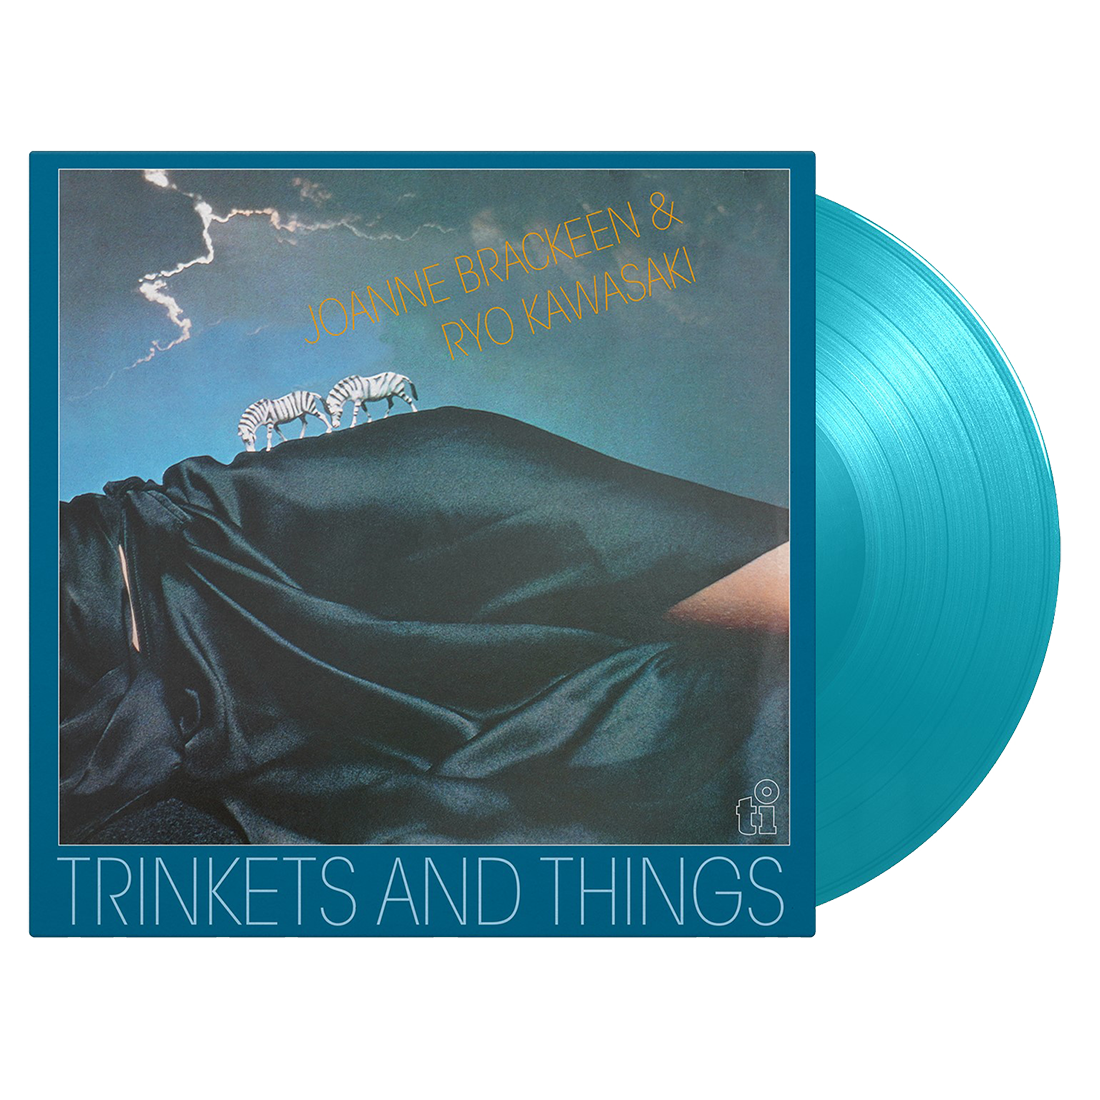 Joanne Brackeen, Ryo Kawasaki -  Trinkets and Things: Turquoise Vinyl LP